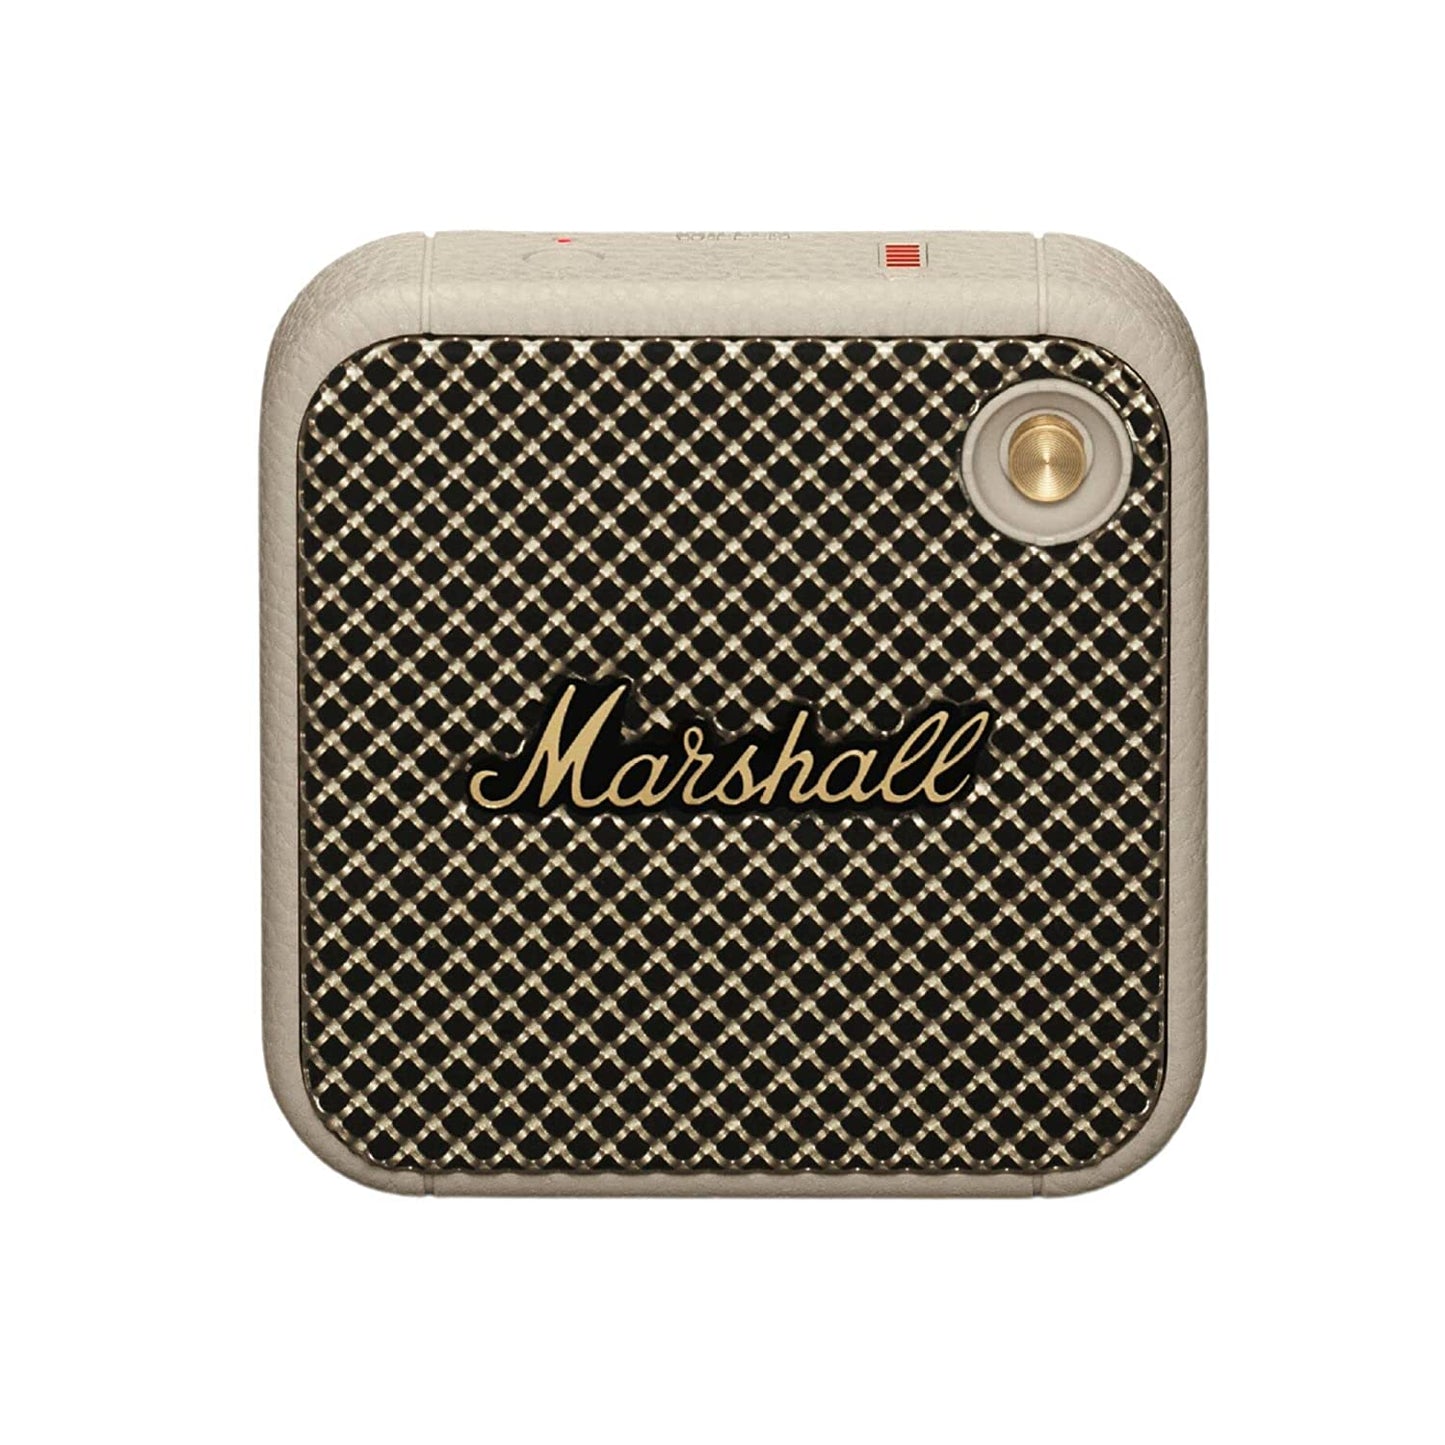 Marshall Willen Bluetooth Speaker - Cream